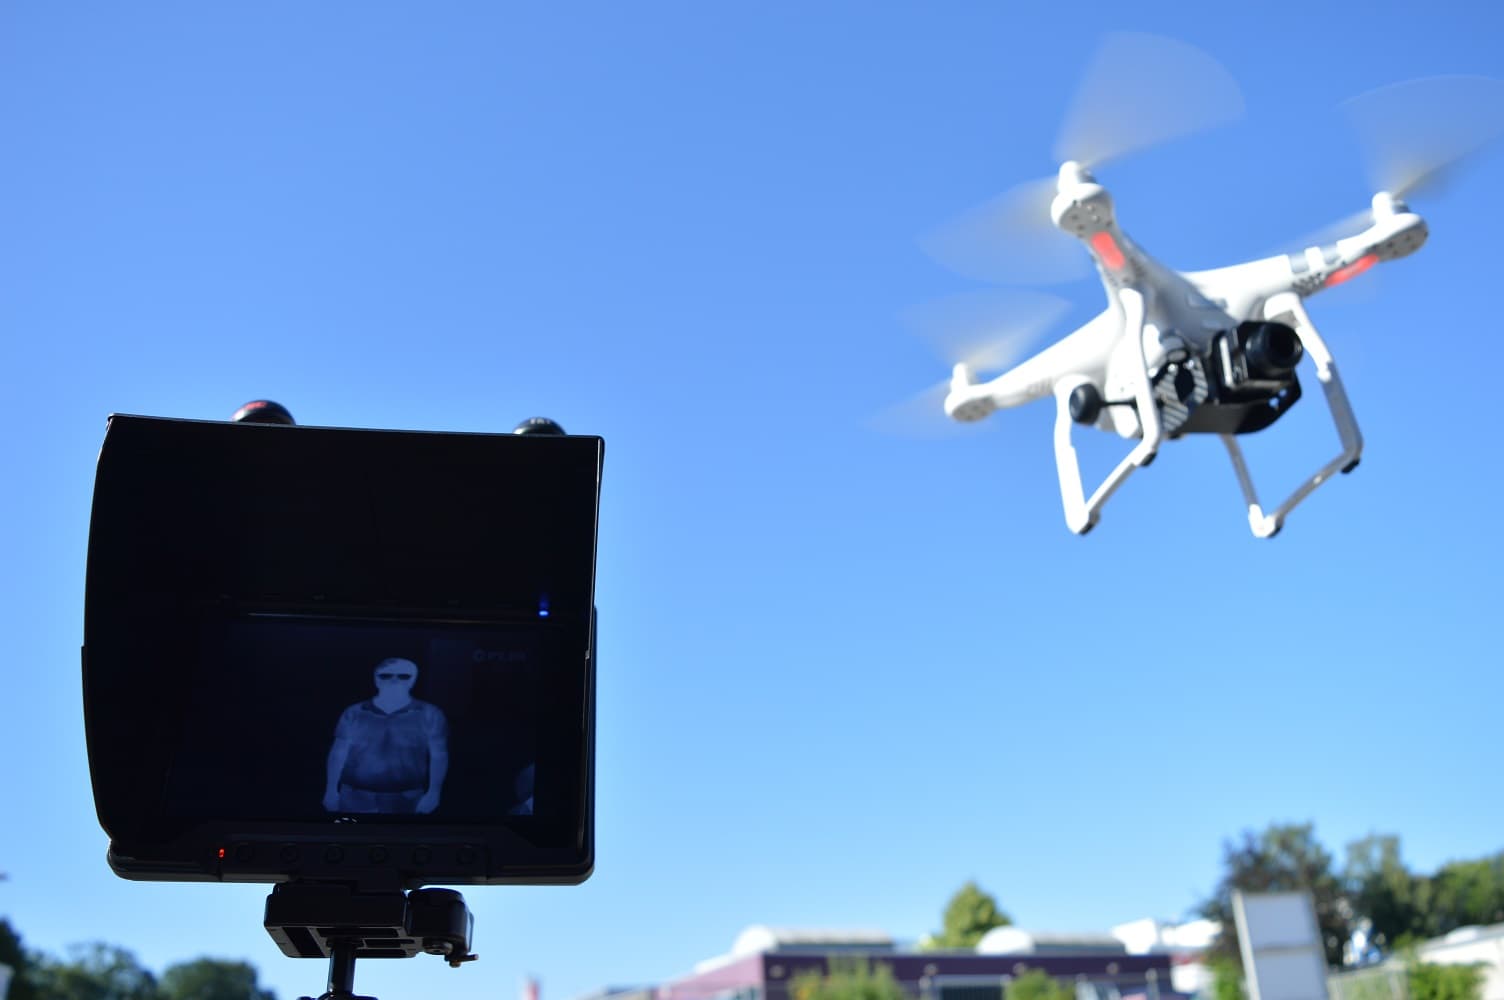 Drohne mit Wärmebildkamera